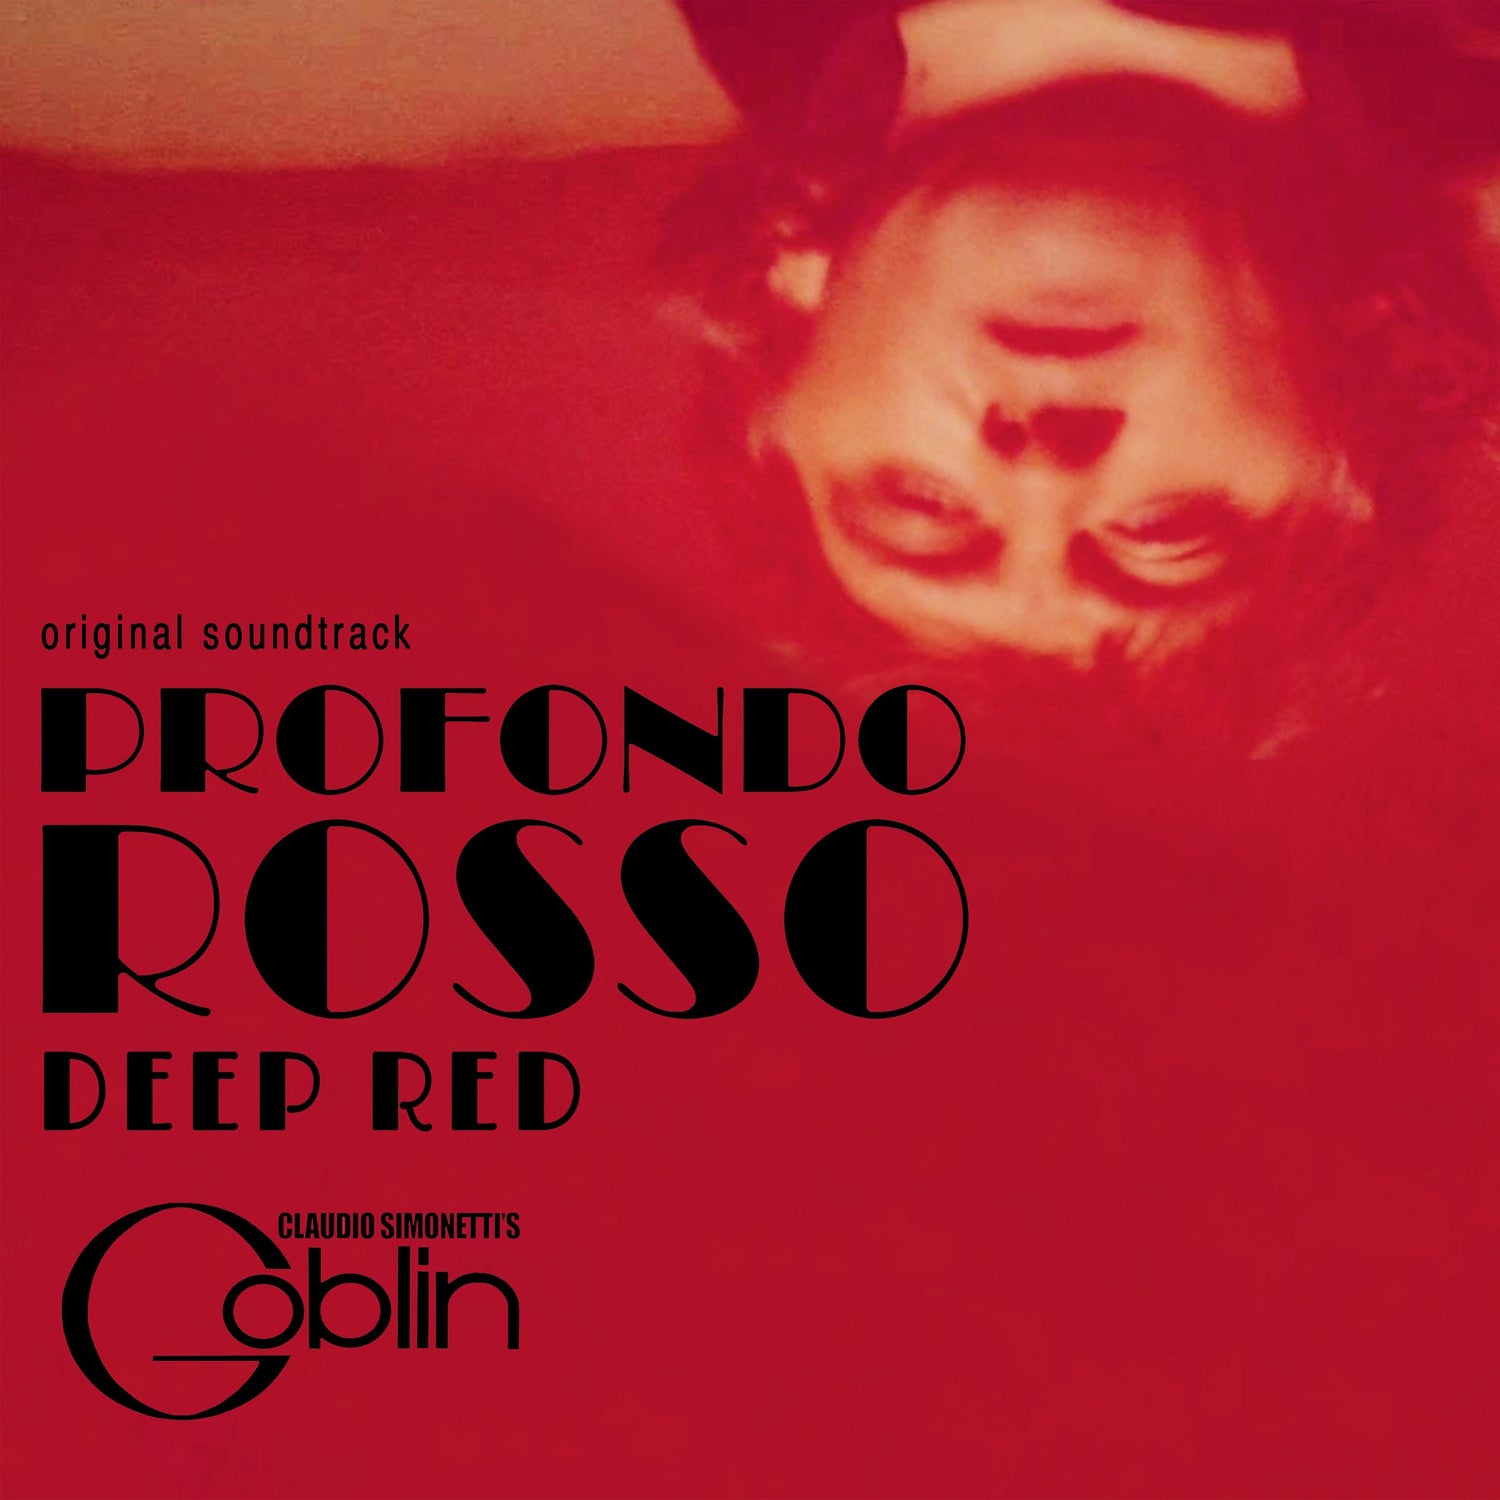 Dario Argento's DEEP RED (PROFONDO ROSSO) Original Soundtrack LP (40th Anniversary Edition, limited colored vinyl + poster) (CLAUDIO SIMONETTI'S GOBLIN)